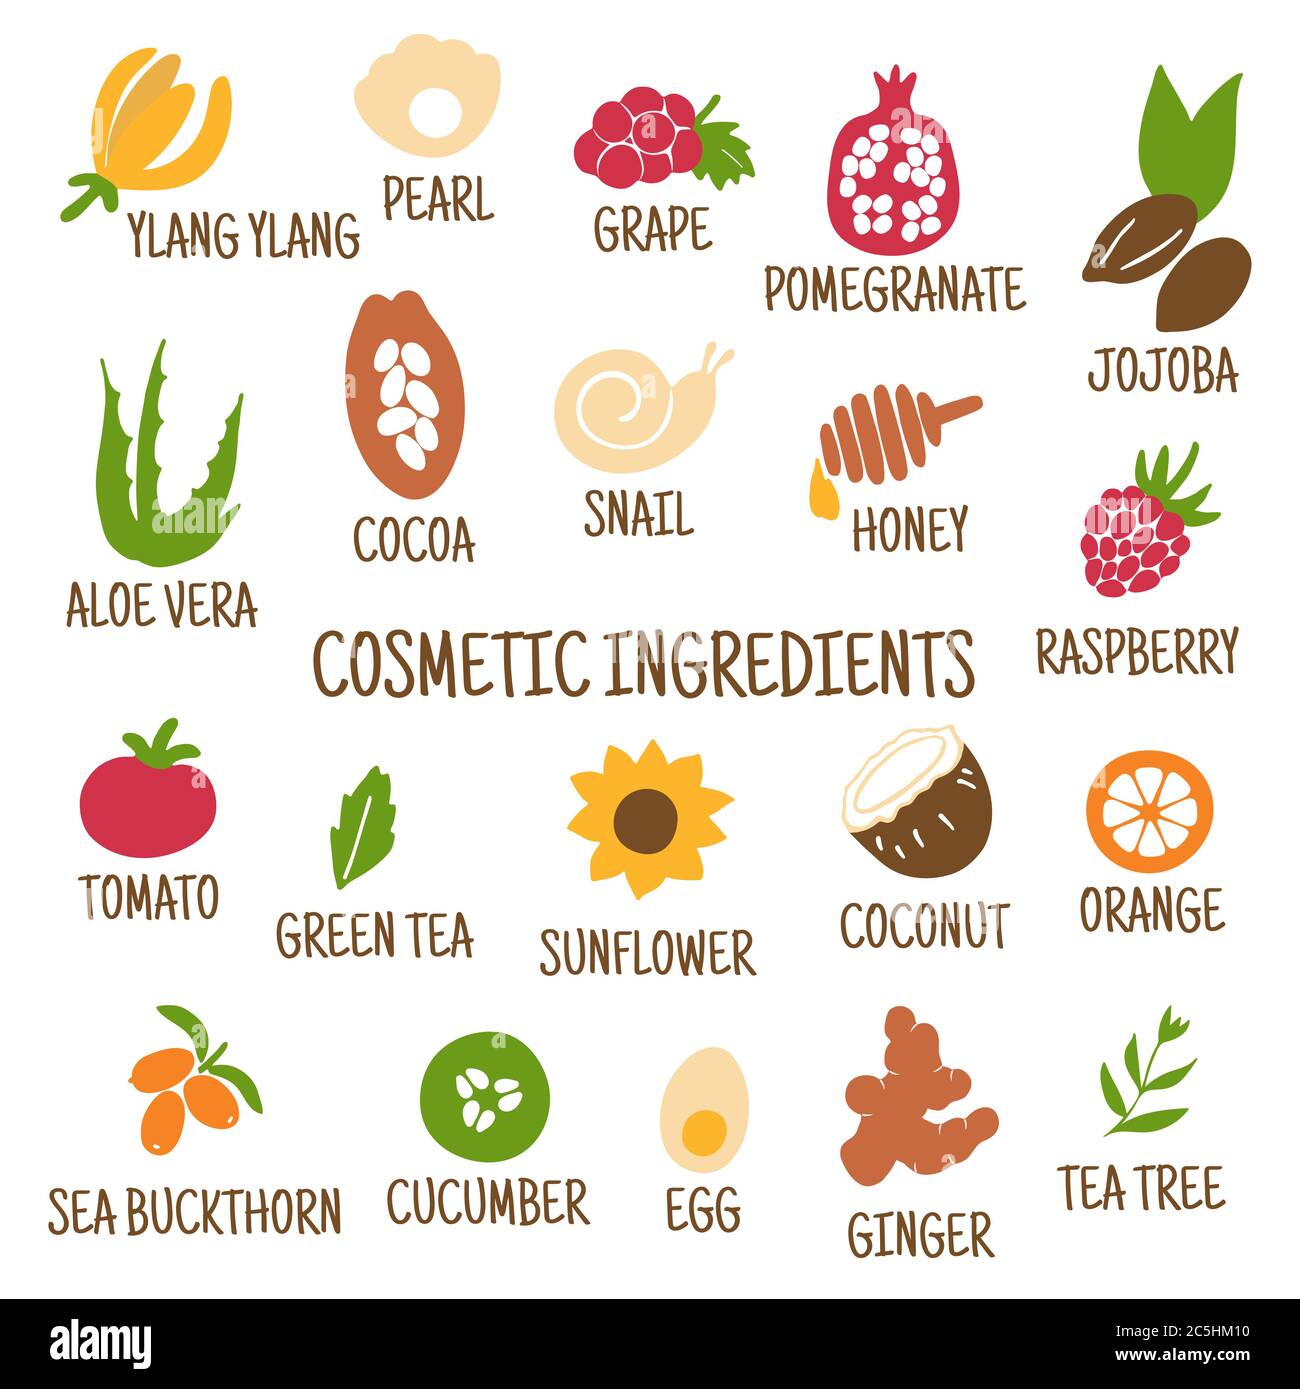 Kosmetische Inhaltsstoffe. Handgezeichnete Ikonen von Kräutern, Obst, Gemüse, Blumen, Ölen. Sammlung von Vektorsymbolen. Stock Vektor